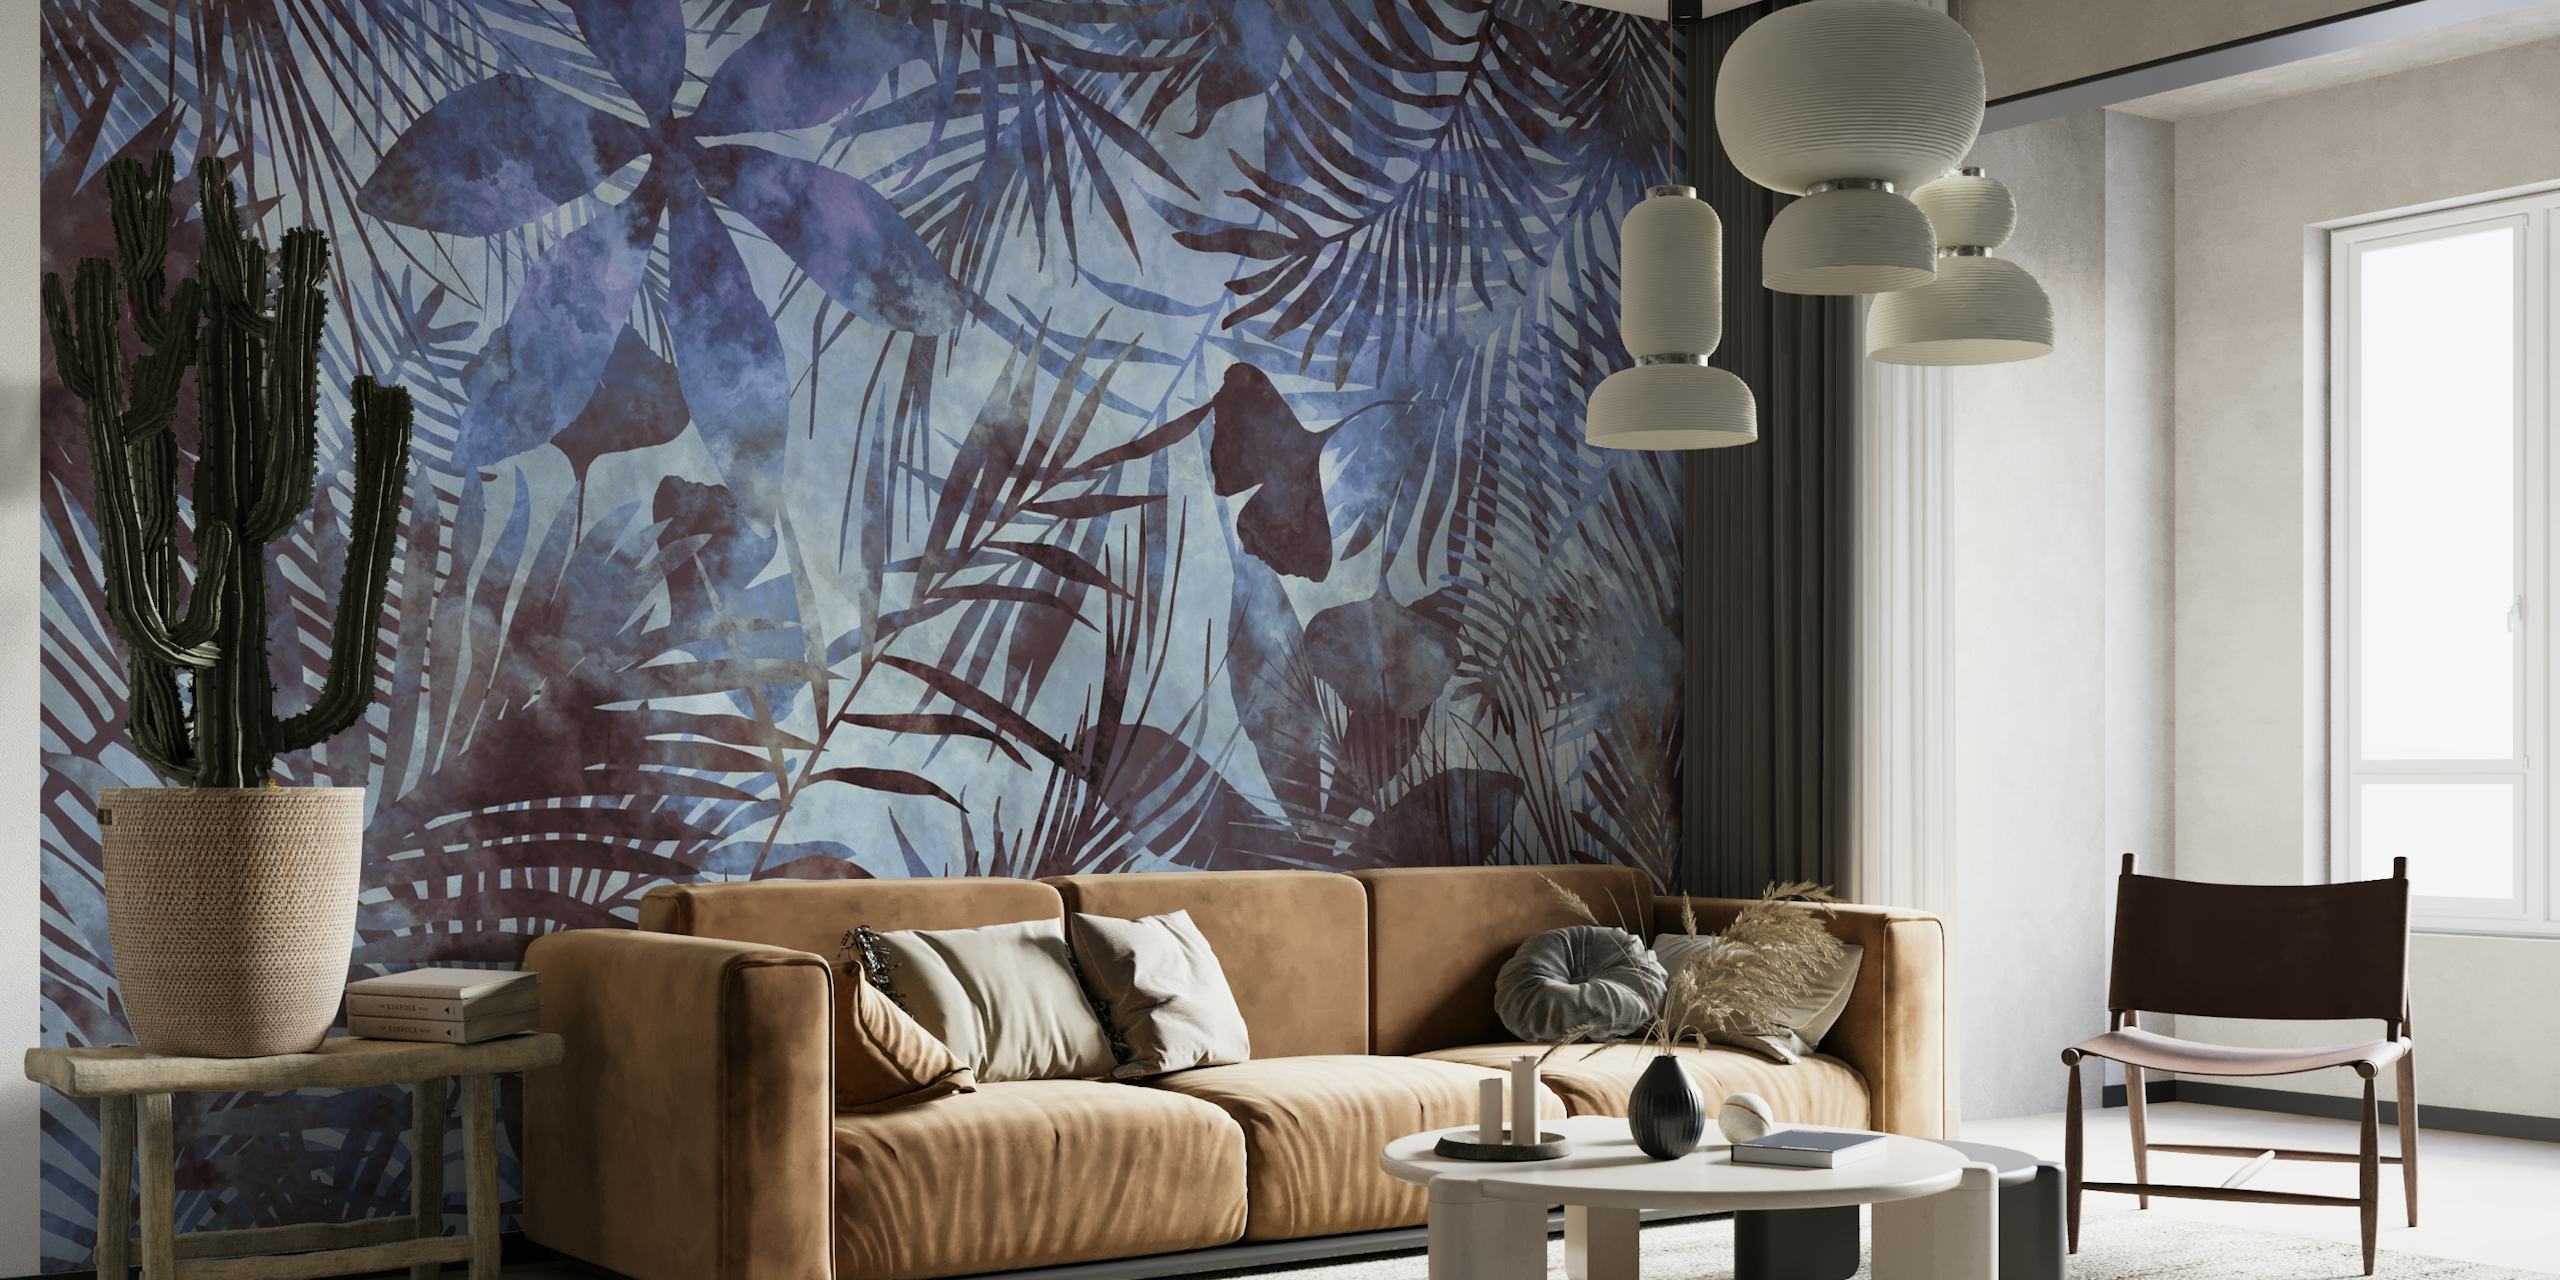 Blauwe tropische jungle schilderij muurschildering met een verscheidenheid aan exotische bladeren in blauwtinten.